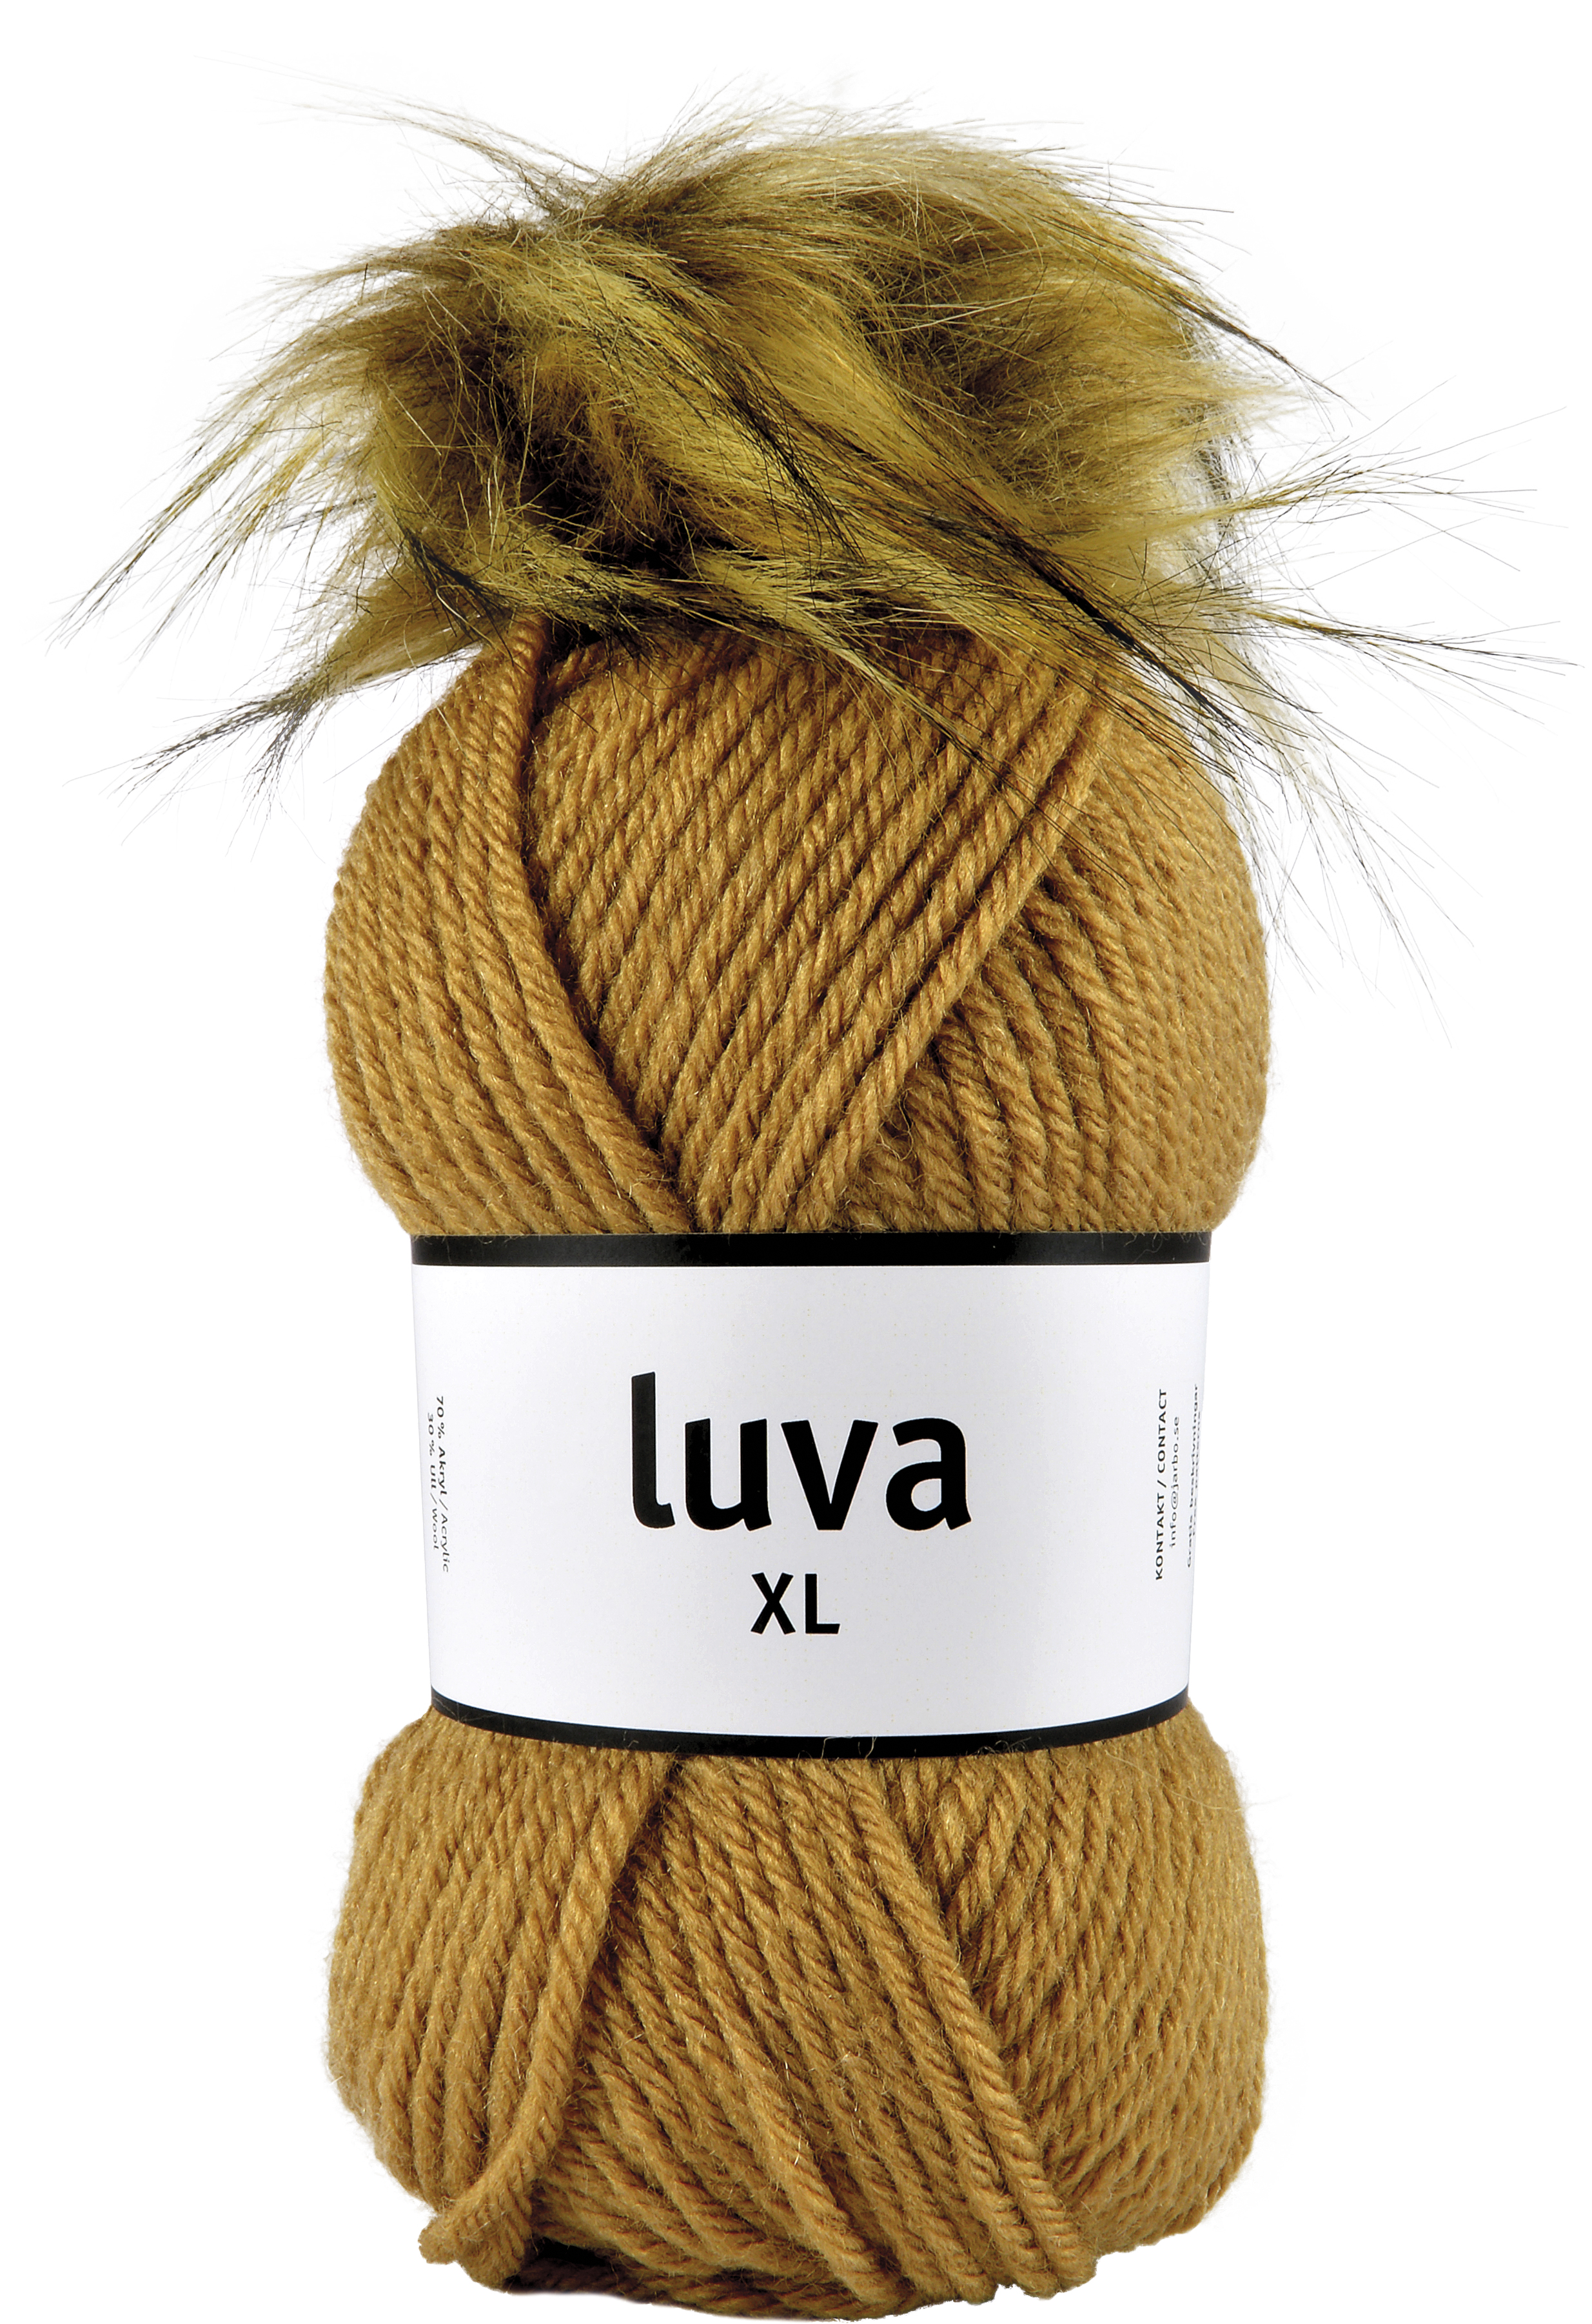 Järbo Luva XL garnpaket mössa med pompom